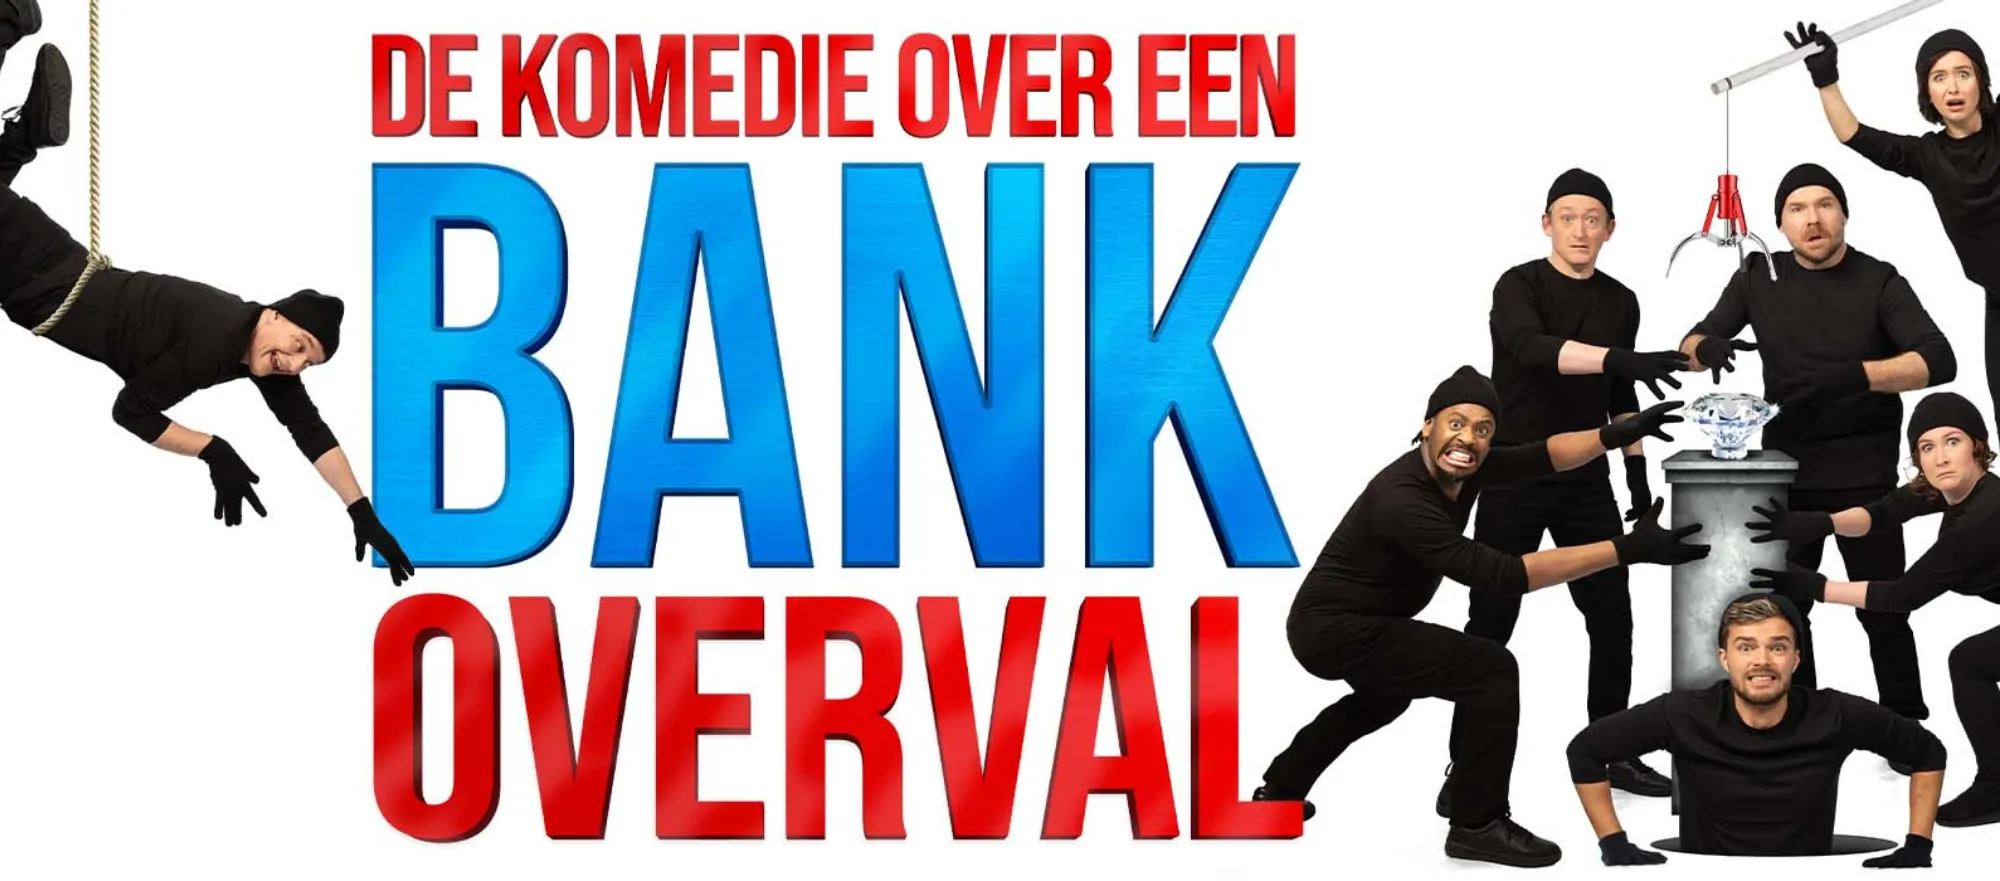 De komedie over een bankoverval